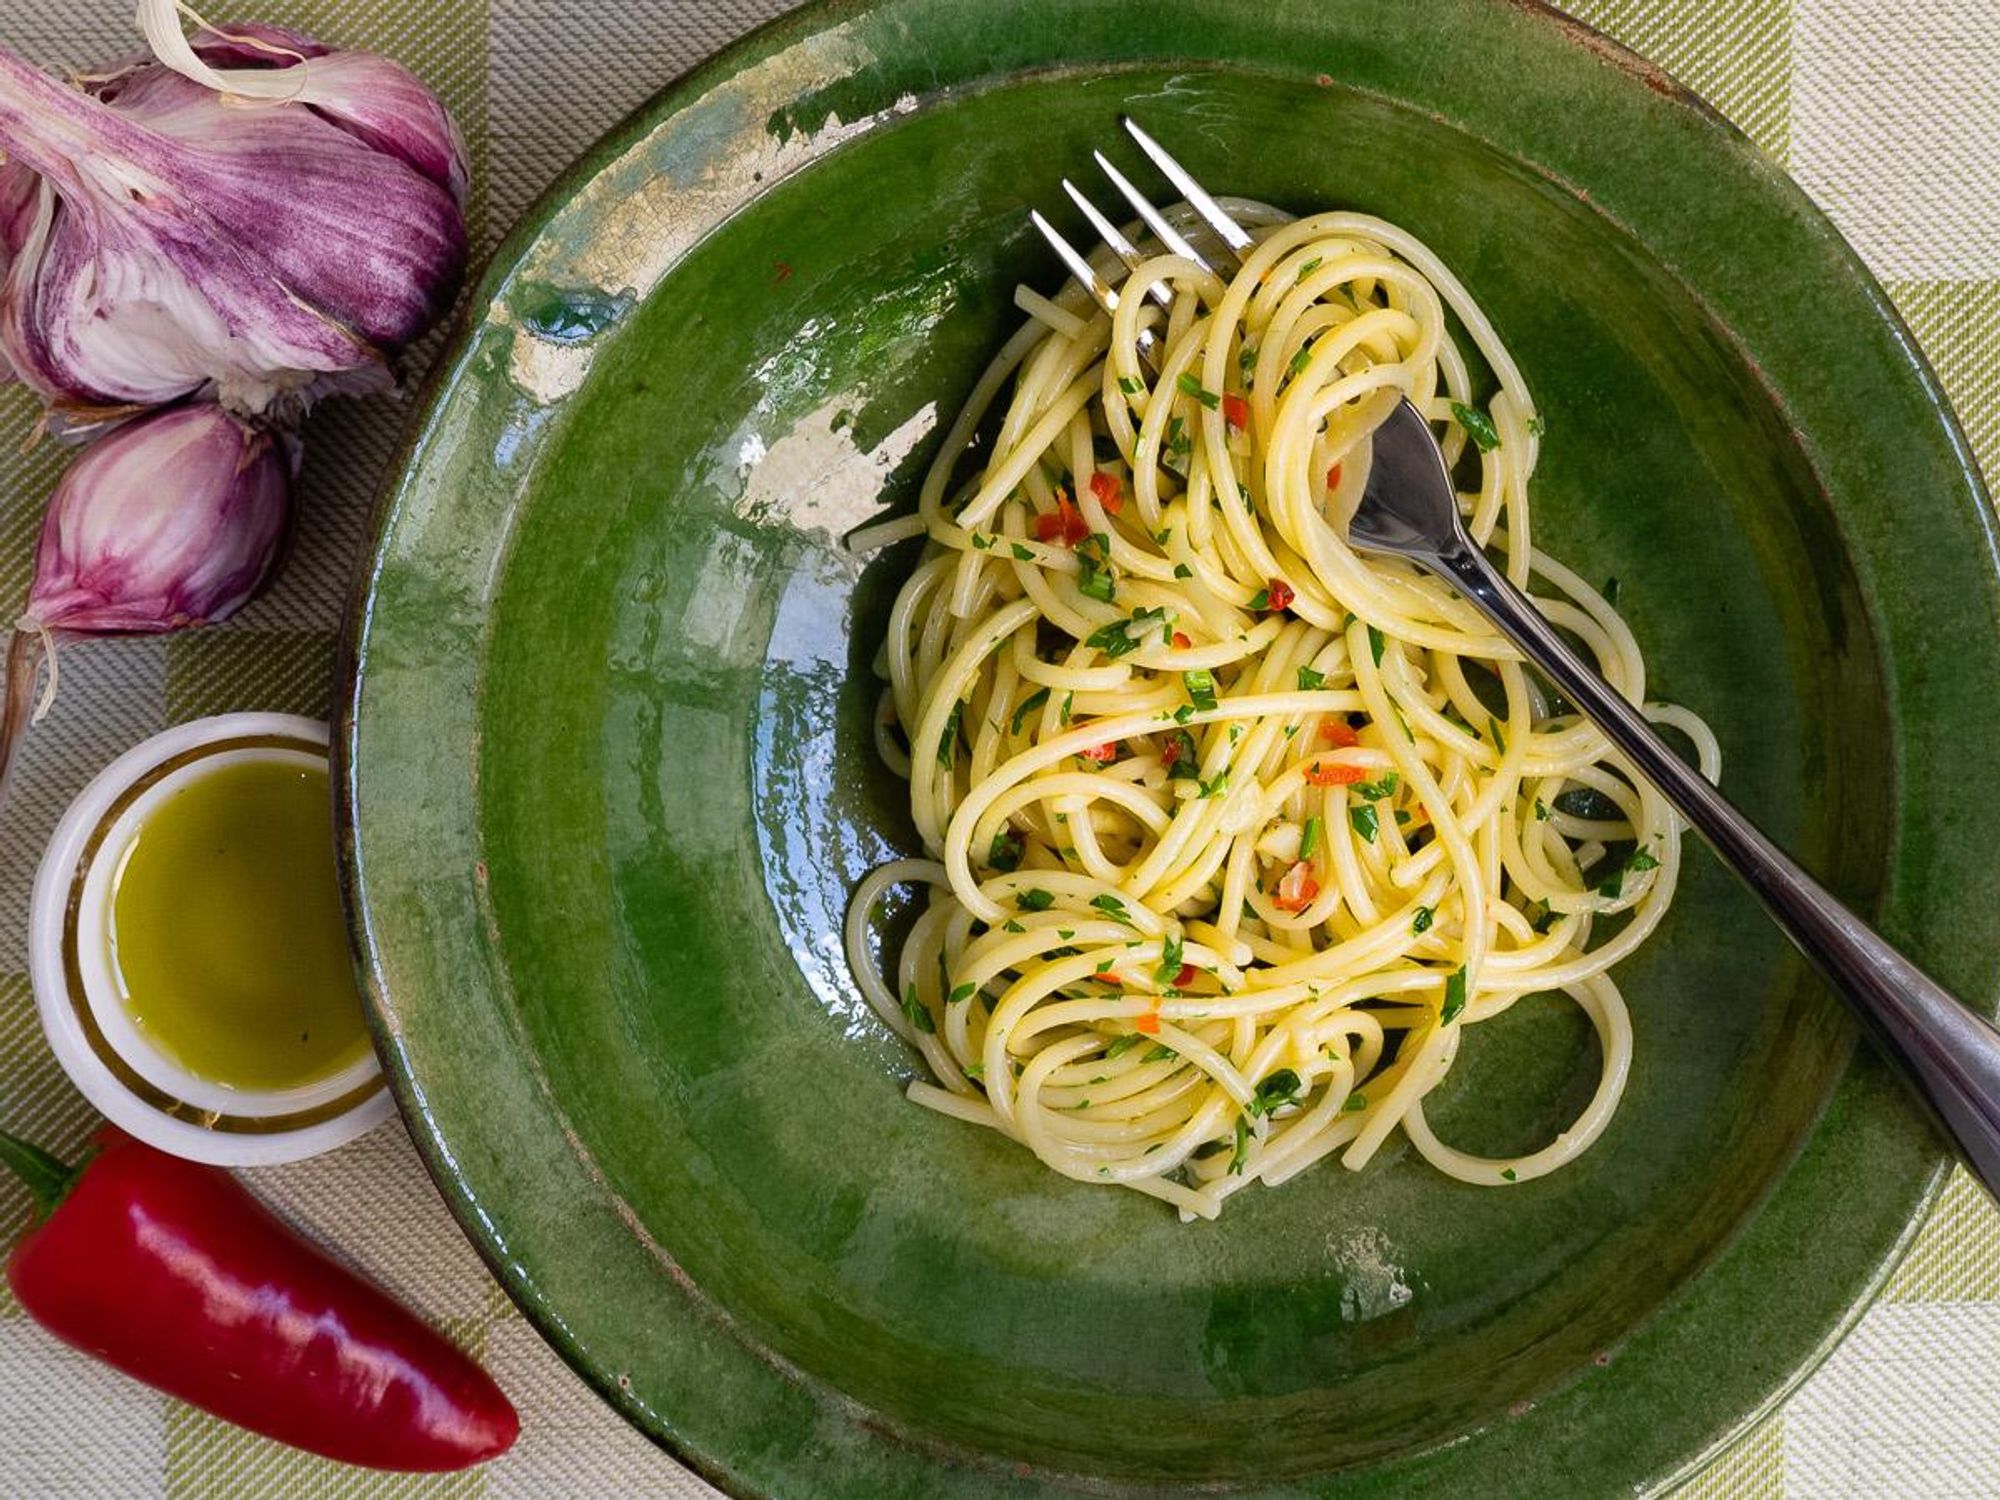 Spaghetti with Garlic, Oil and Chile/chilli